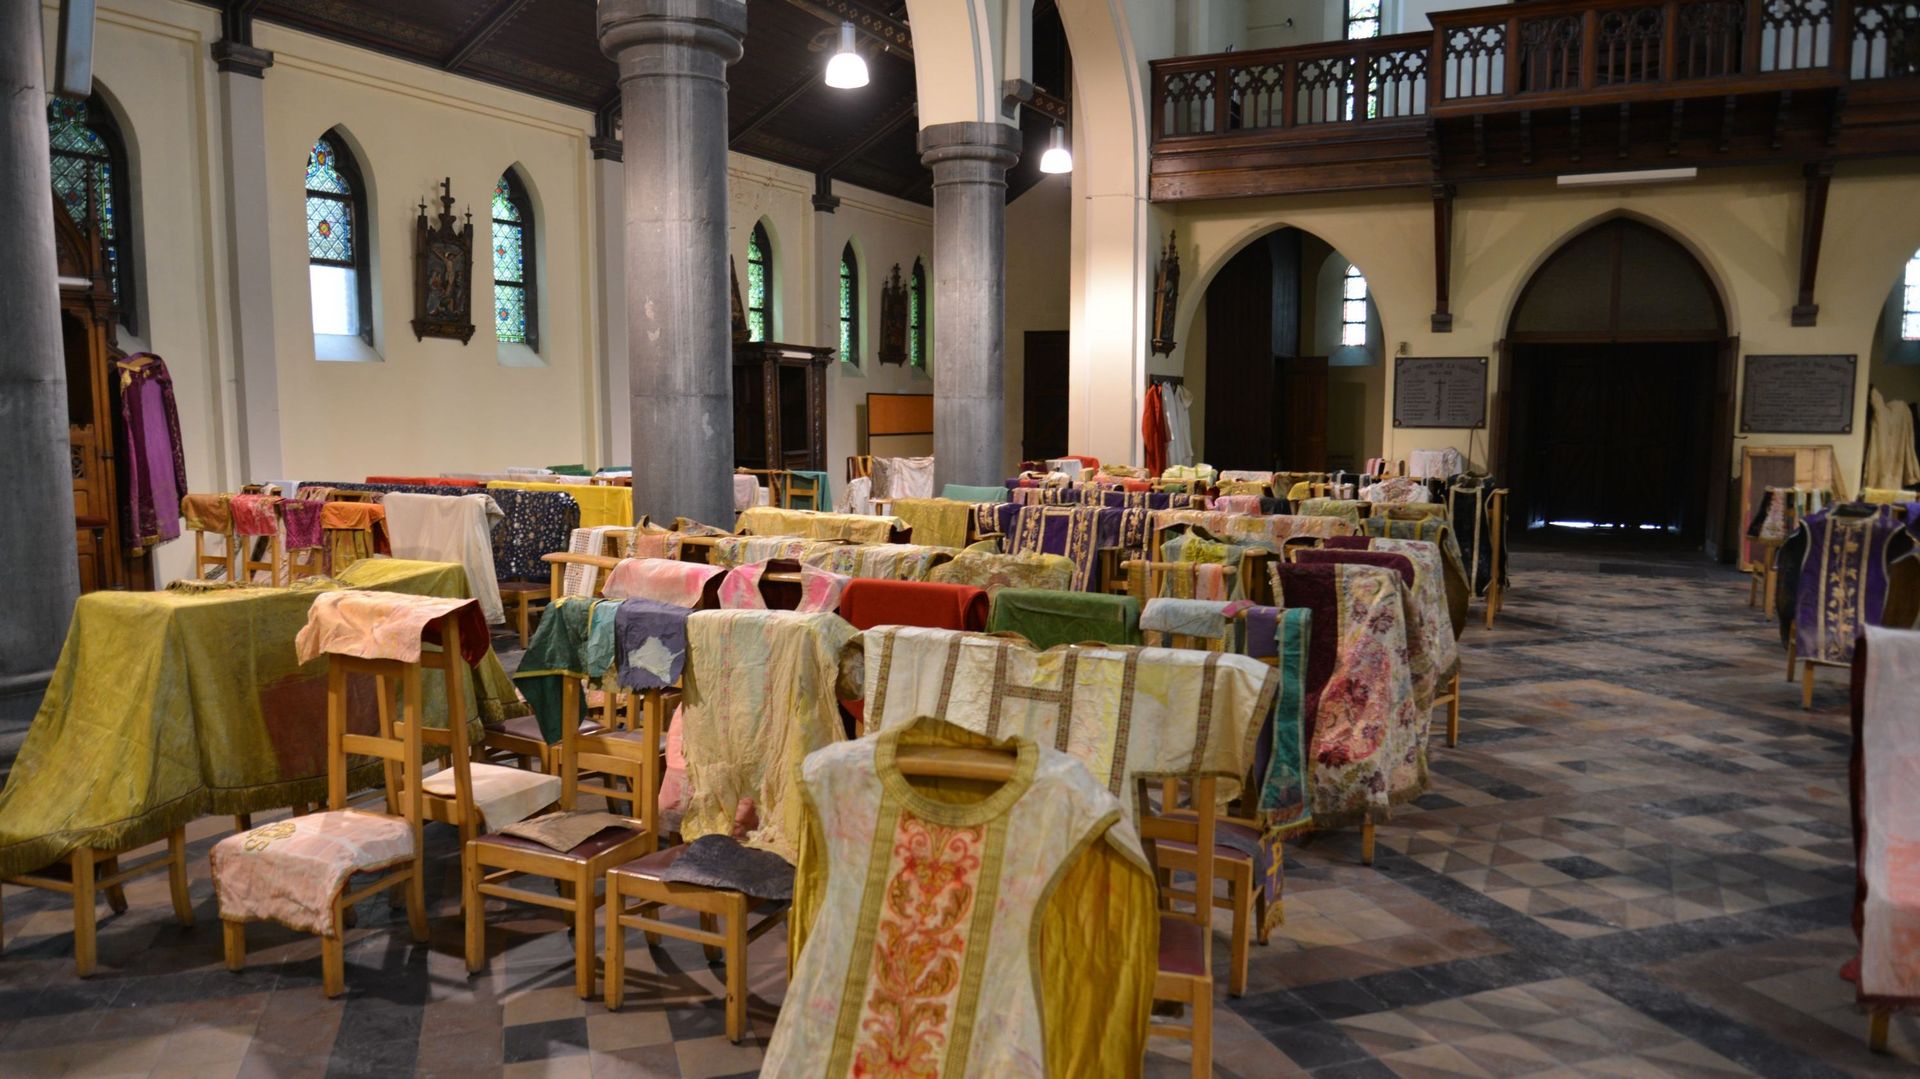 Vêtements liturgiques provenant de la chapelle Saint-Lambert mis à sécher dans l’église Saint-Jean-Baptiste, une des rares églises épargnées à Verviers.